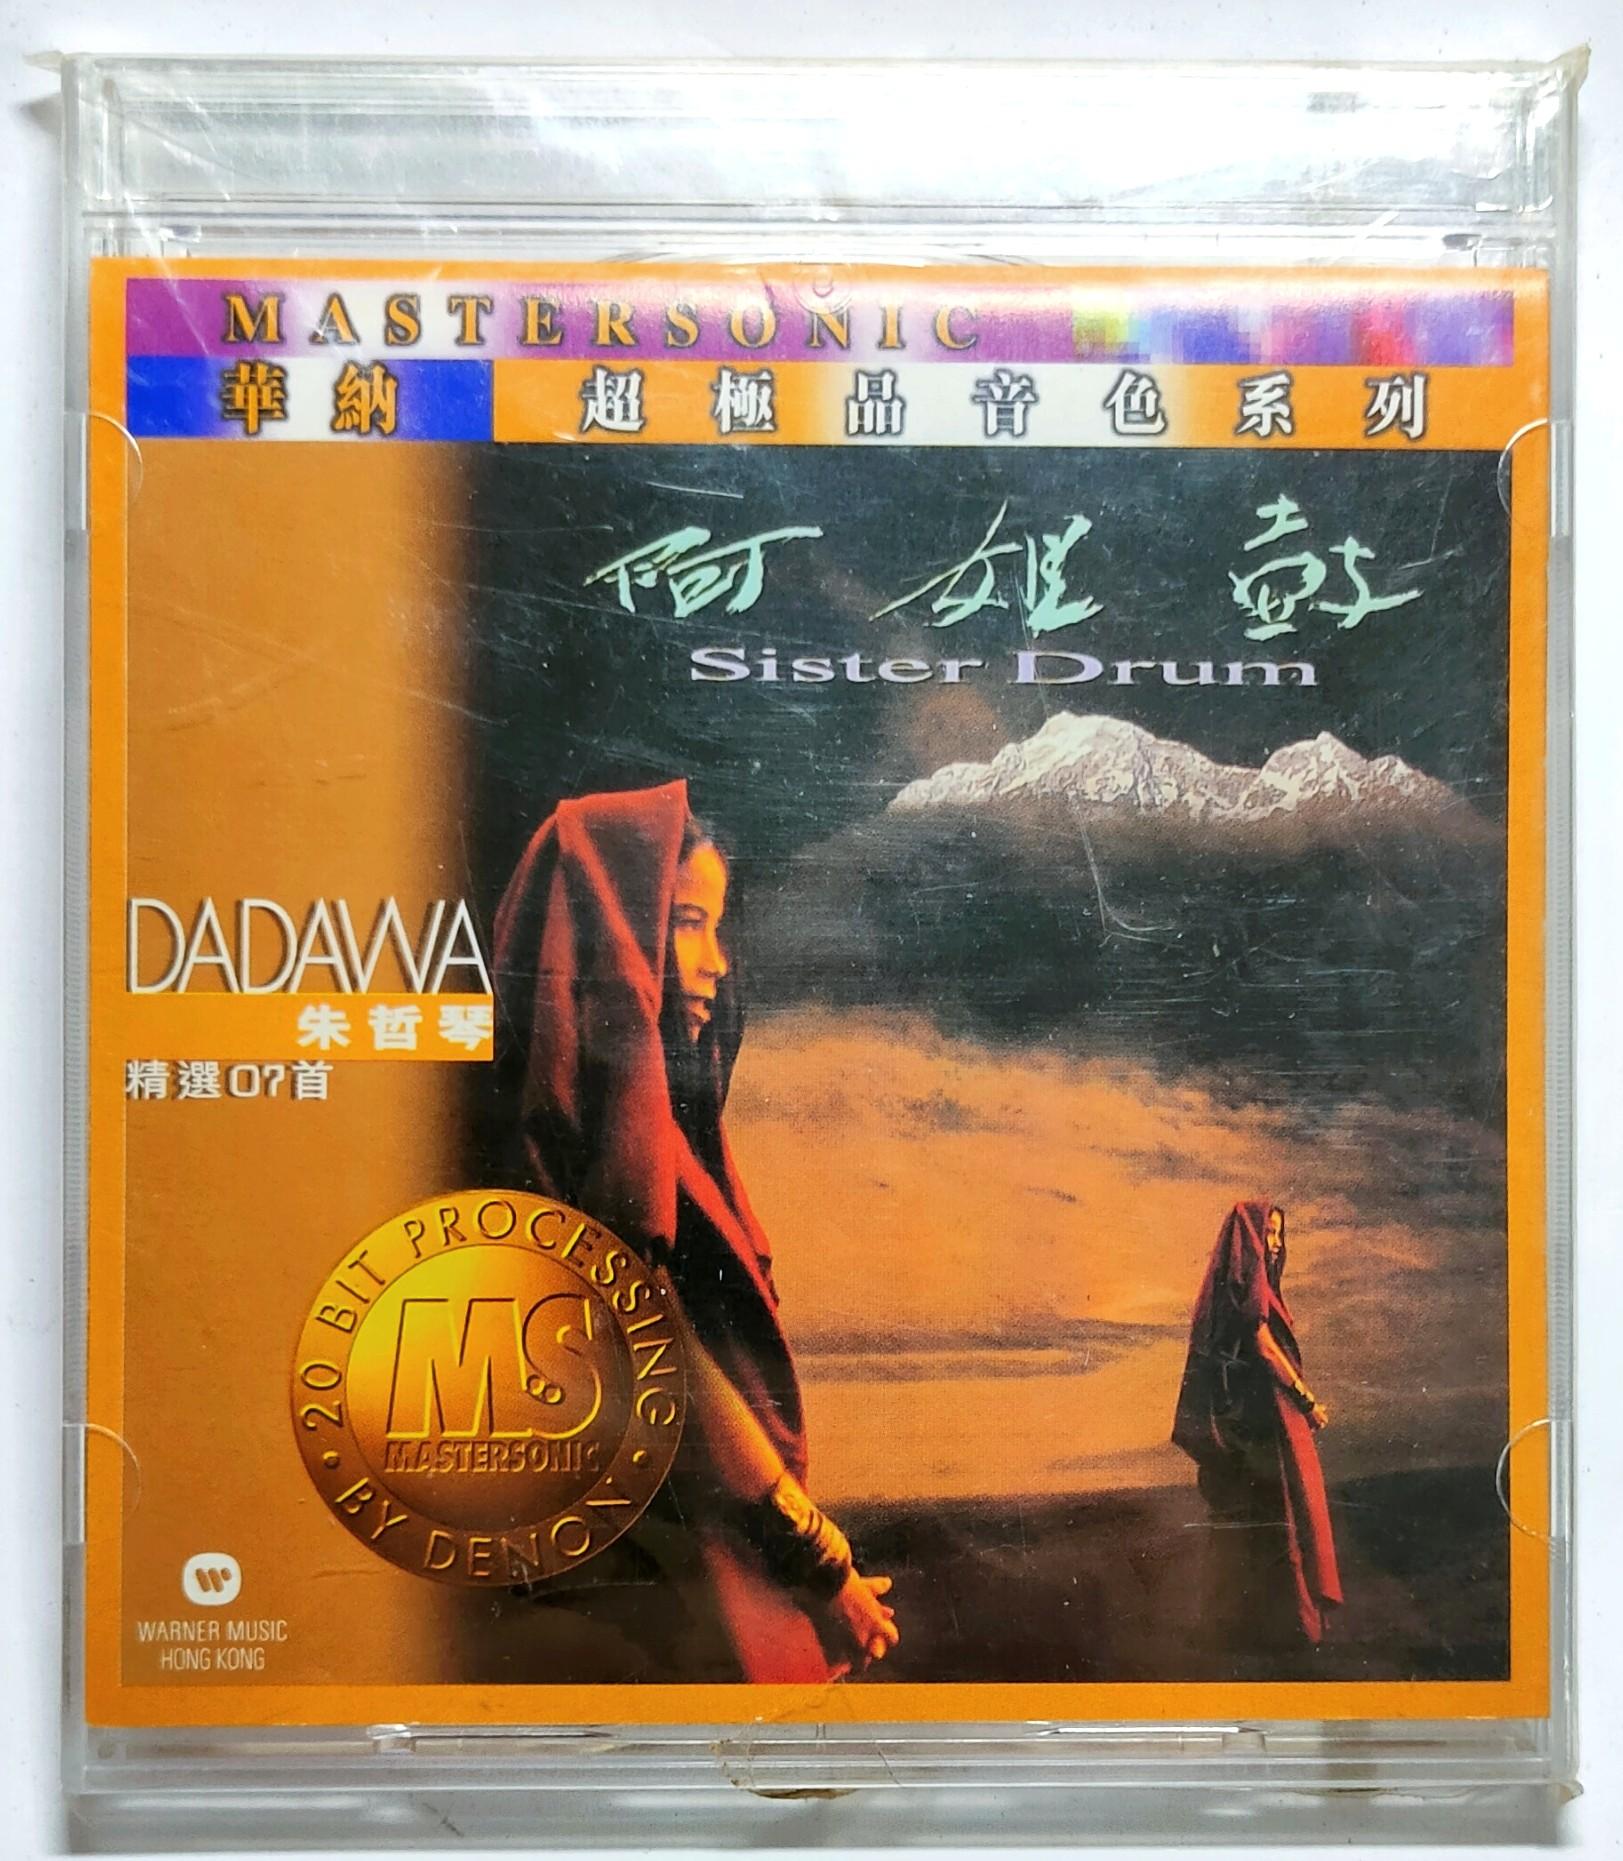 阿姐鼓 Sister Drum (24k金碟/日本天龙制造/华纳超极品音色系列) - 朱哲琴 Dadawa (CD, HK, 1997)